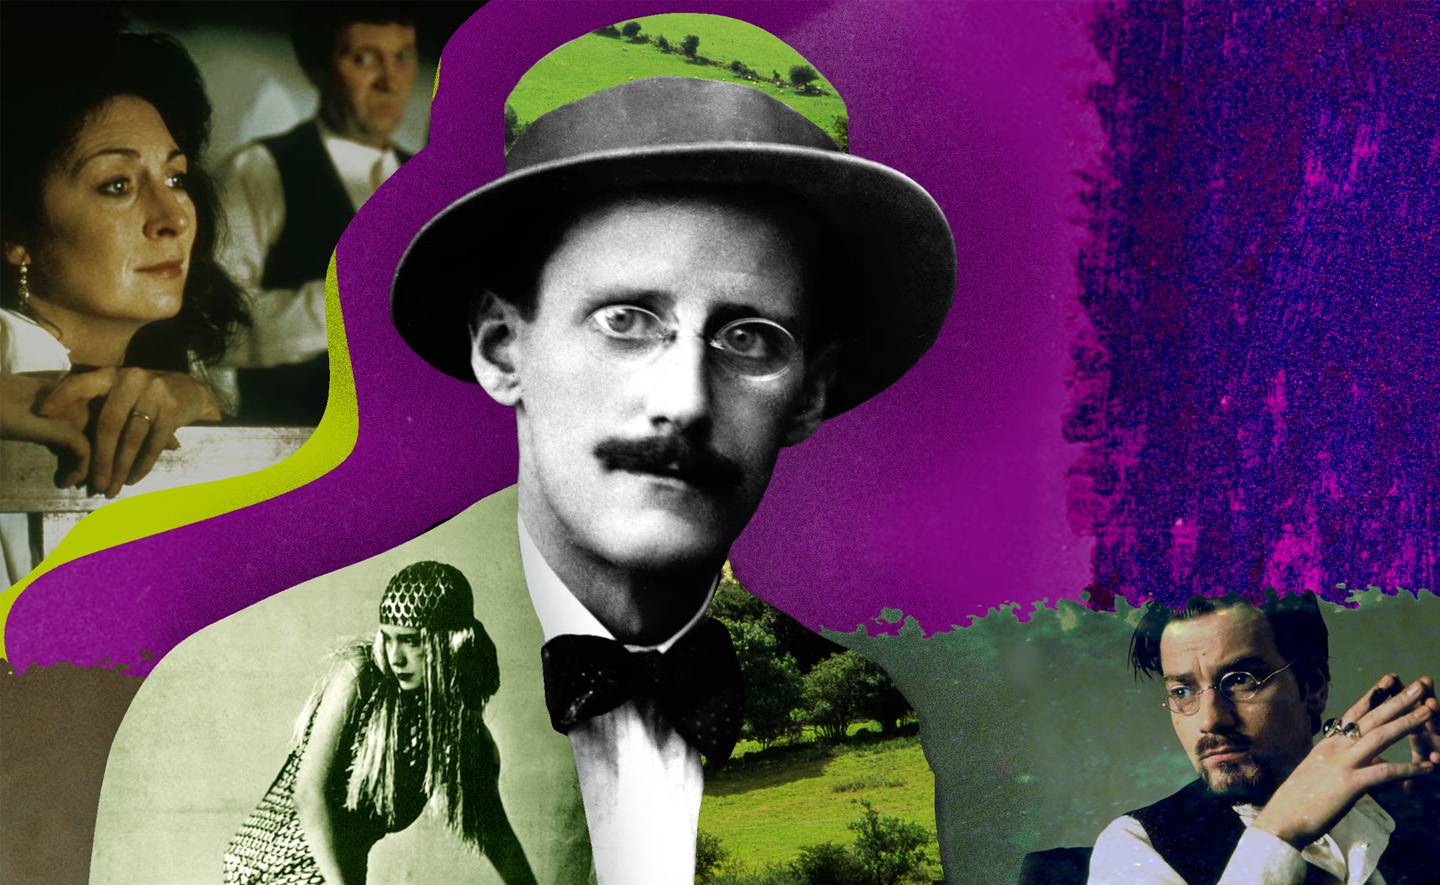 Hướng dẫn đọc các tác phẩm của James Joyce